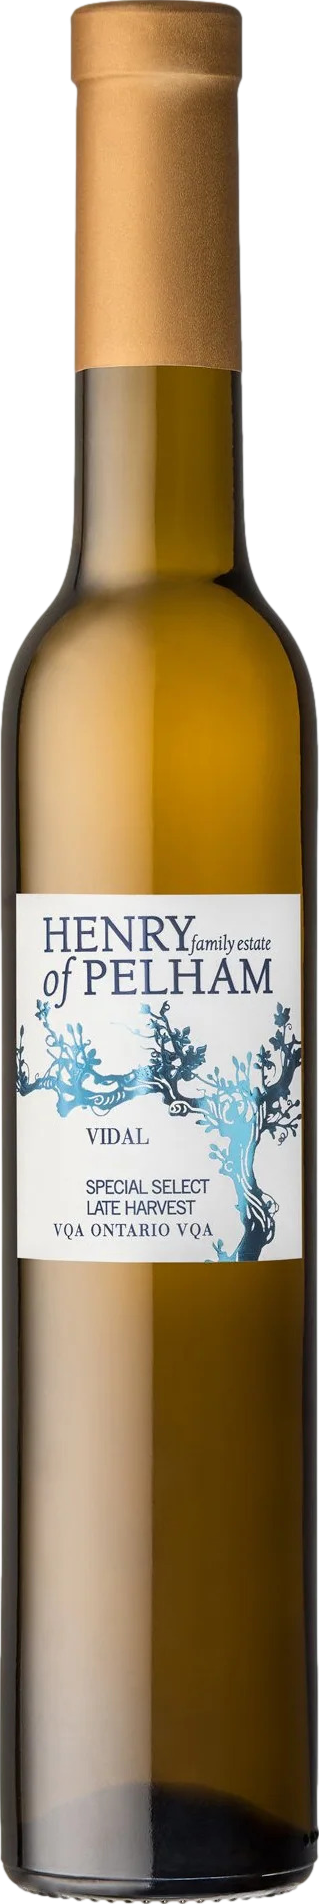 Pelham Special günstig Kaufen-Henry of Pelham Special Select Late Harvest Vidal 2019. Henry of Pelham Special Select Late Harvest Vidal 2019 . 